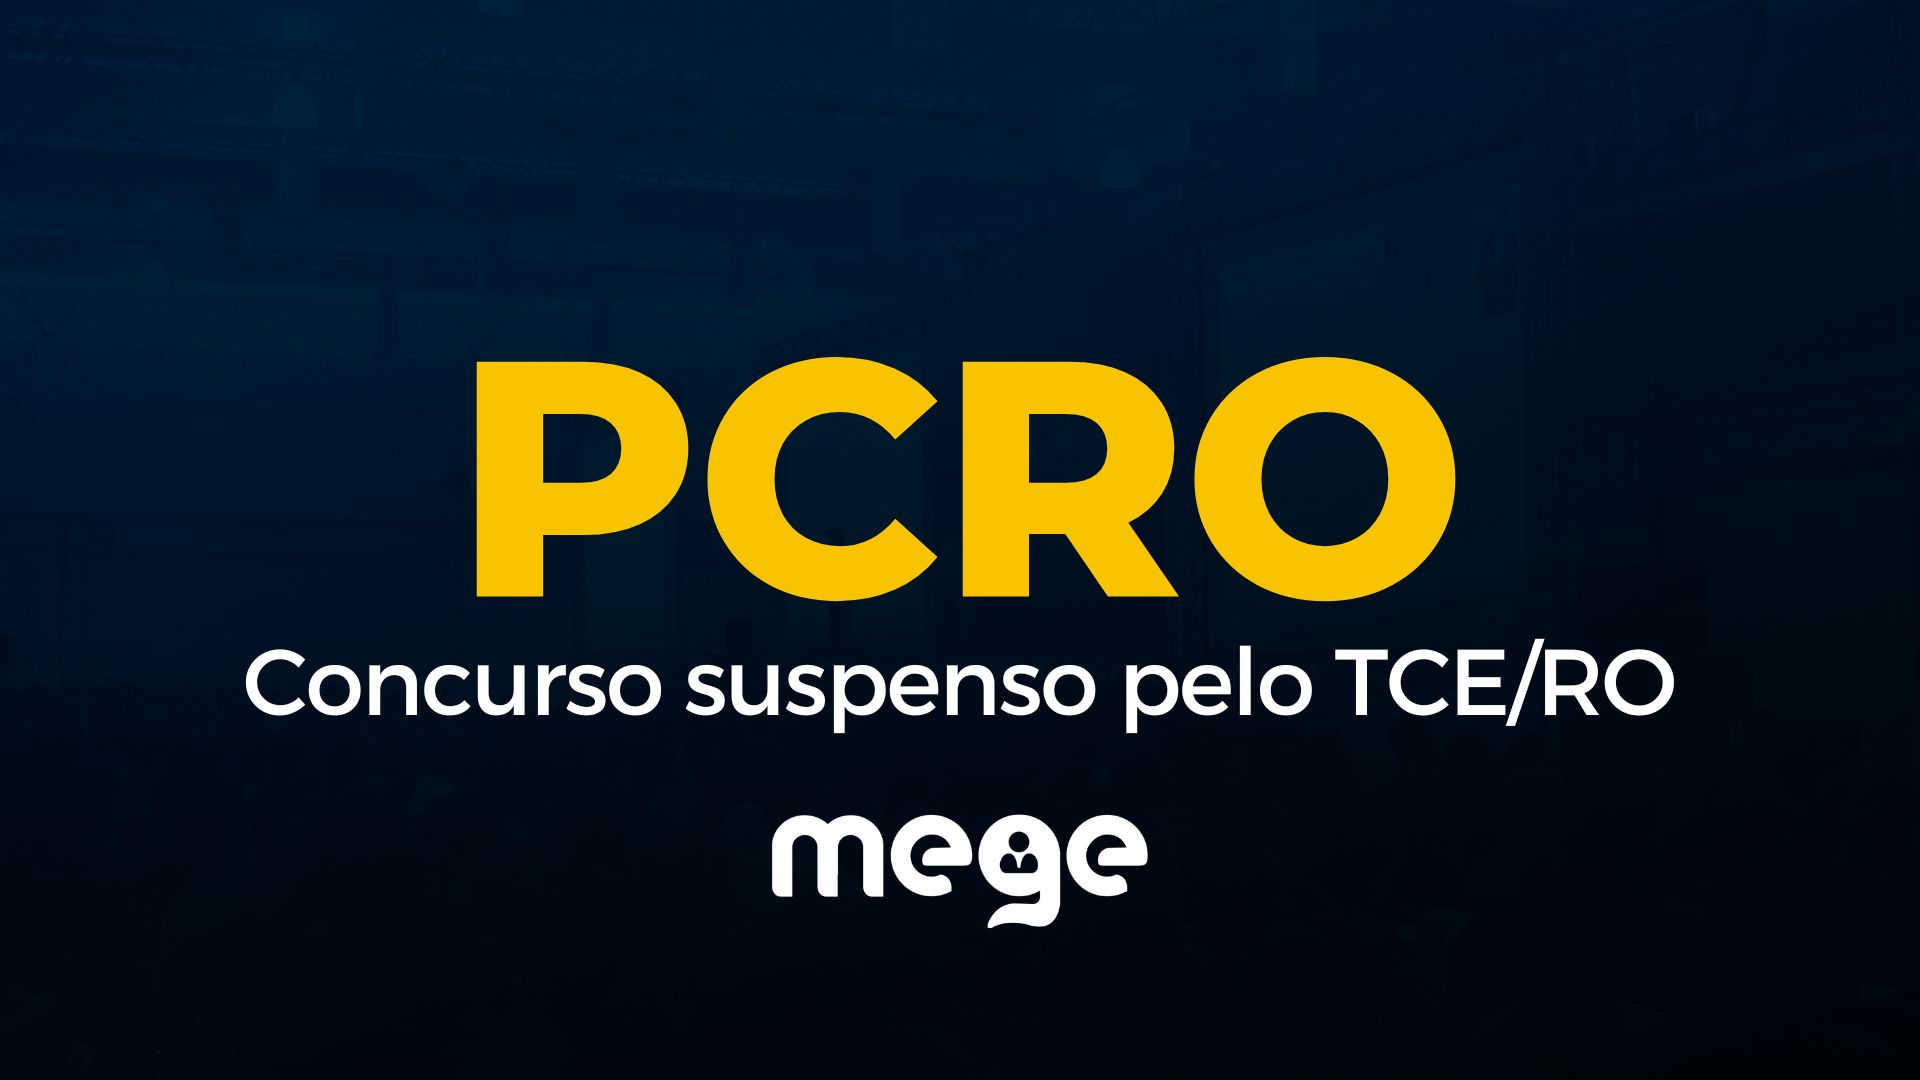 PCRO: Concurso suspenso pelo TCE/RO